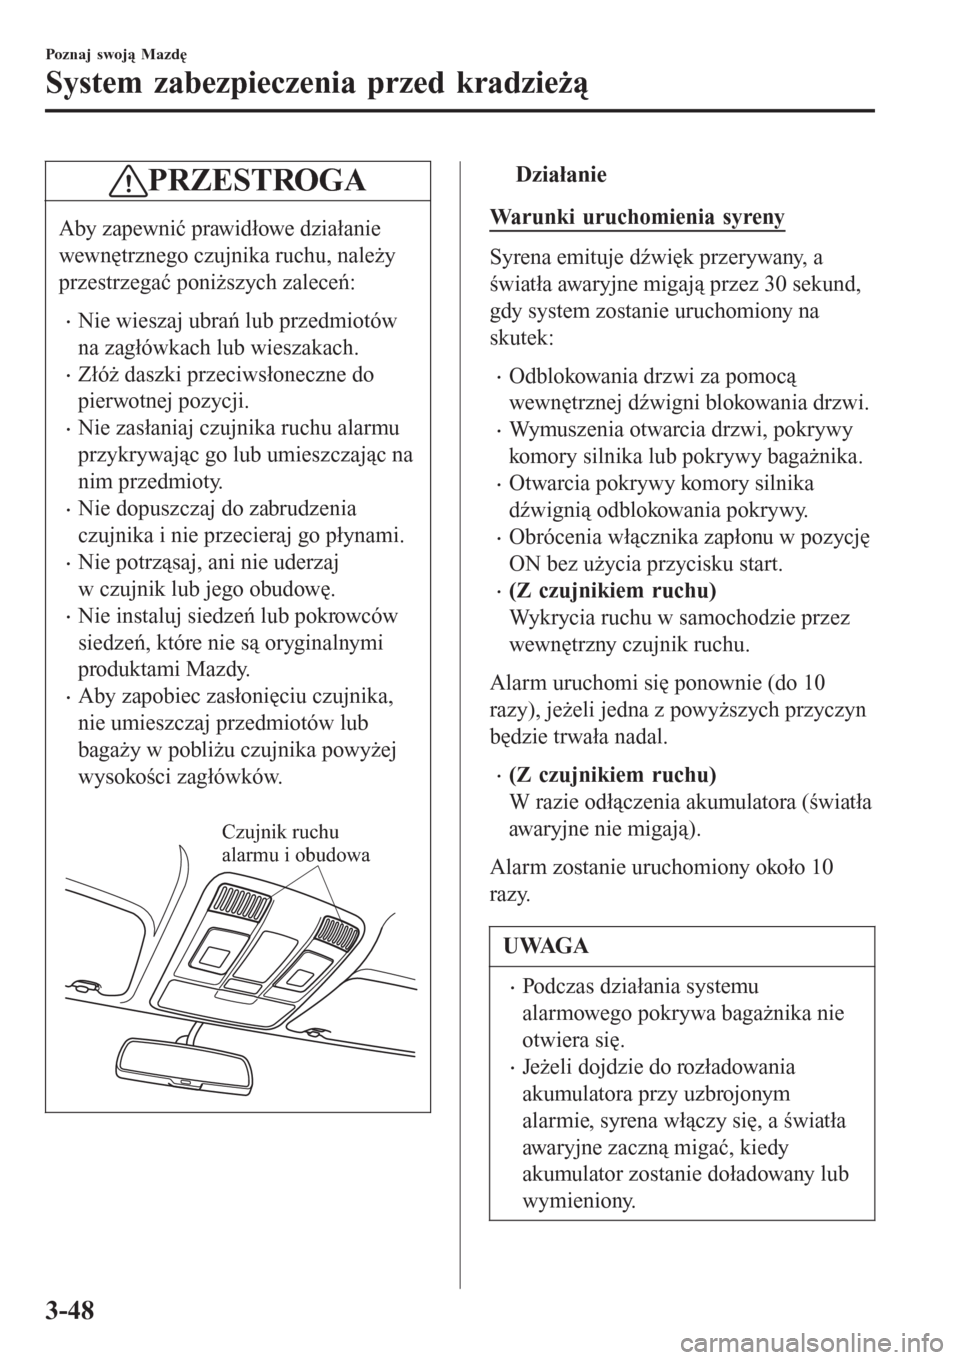 MAZDA MODEL CX-3 2015  Instrukcja Obsługi (in Polish) PRZESTROGA
Aby zapewnić prawidłowe działanie
wewnętrznego czujnika ruchu, należy
przestrzegać poniższych zaleceń:
•Nie wieszaj ubrań lub przedmiotów
na zagłówkach lub wieszakach.
•Zł�